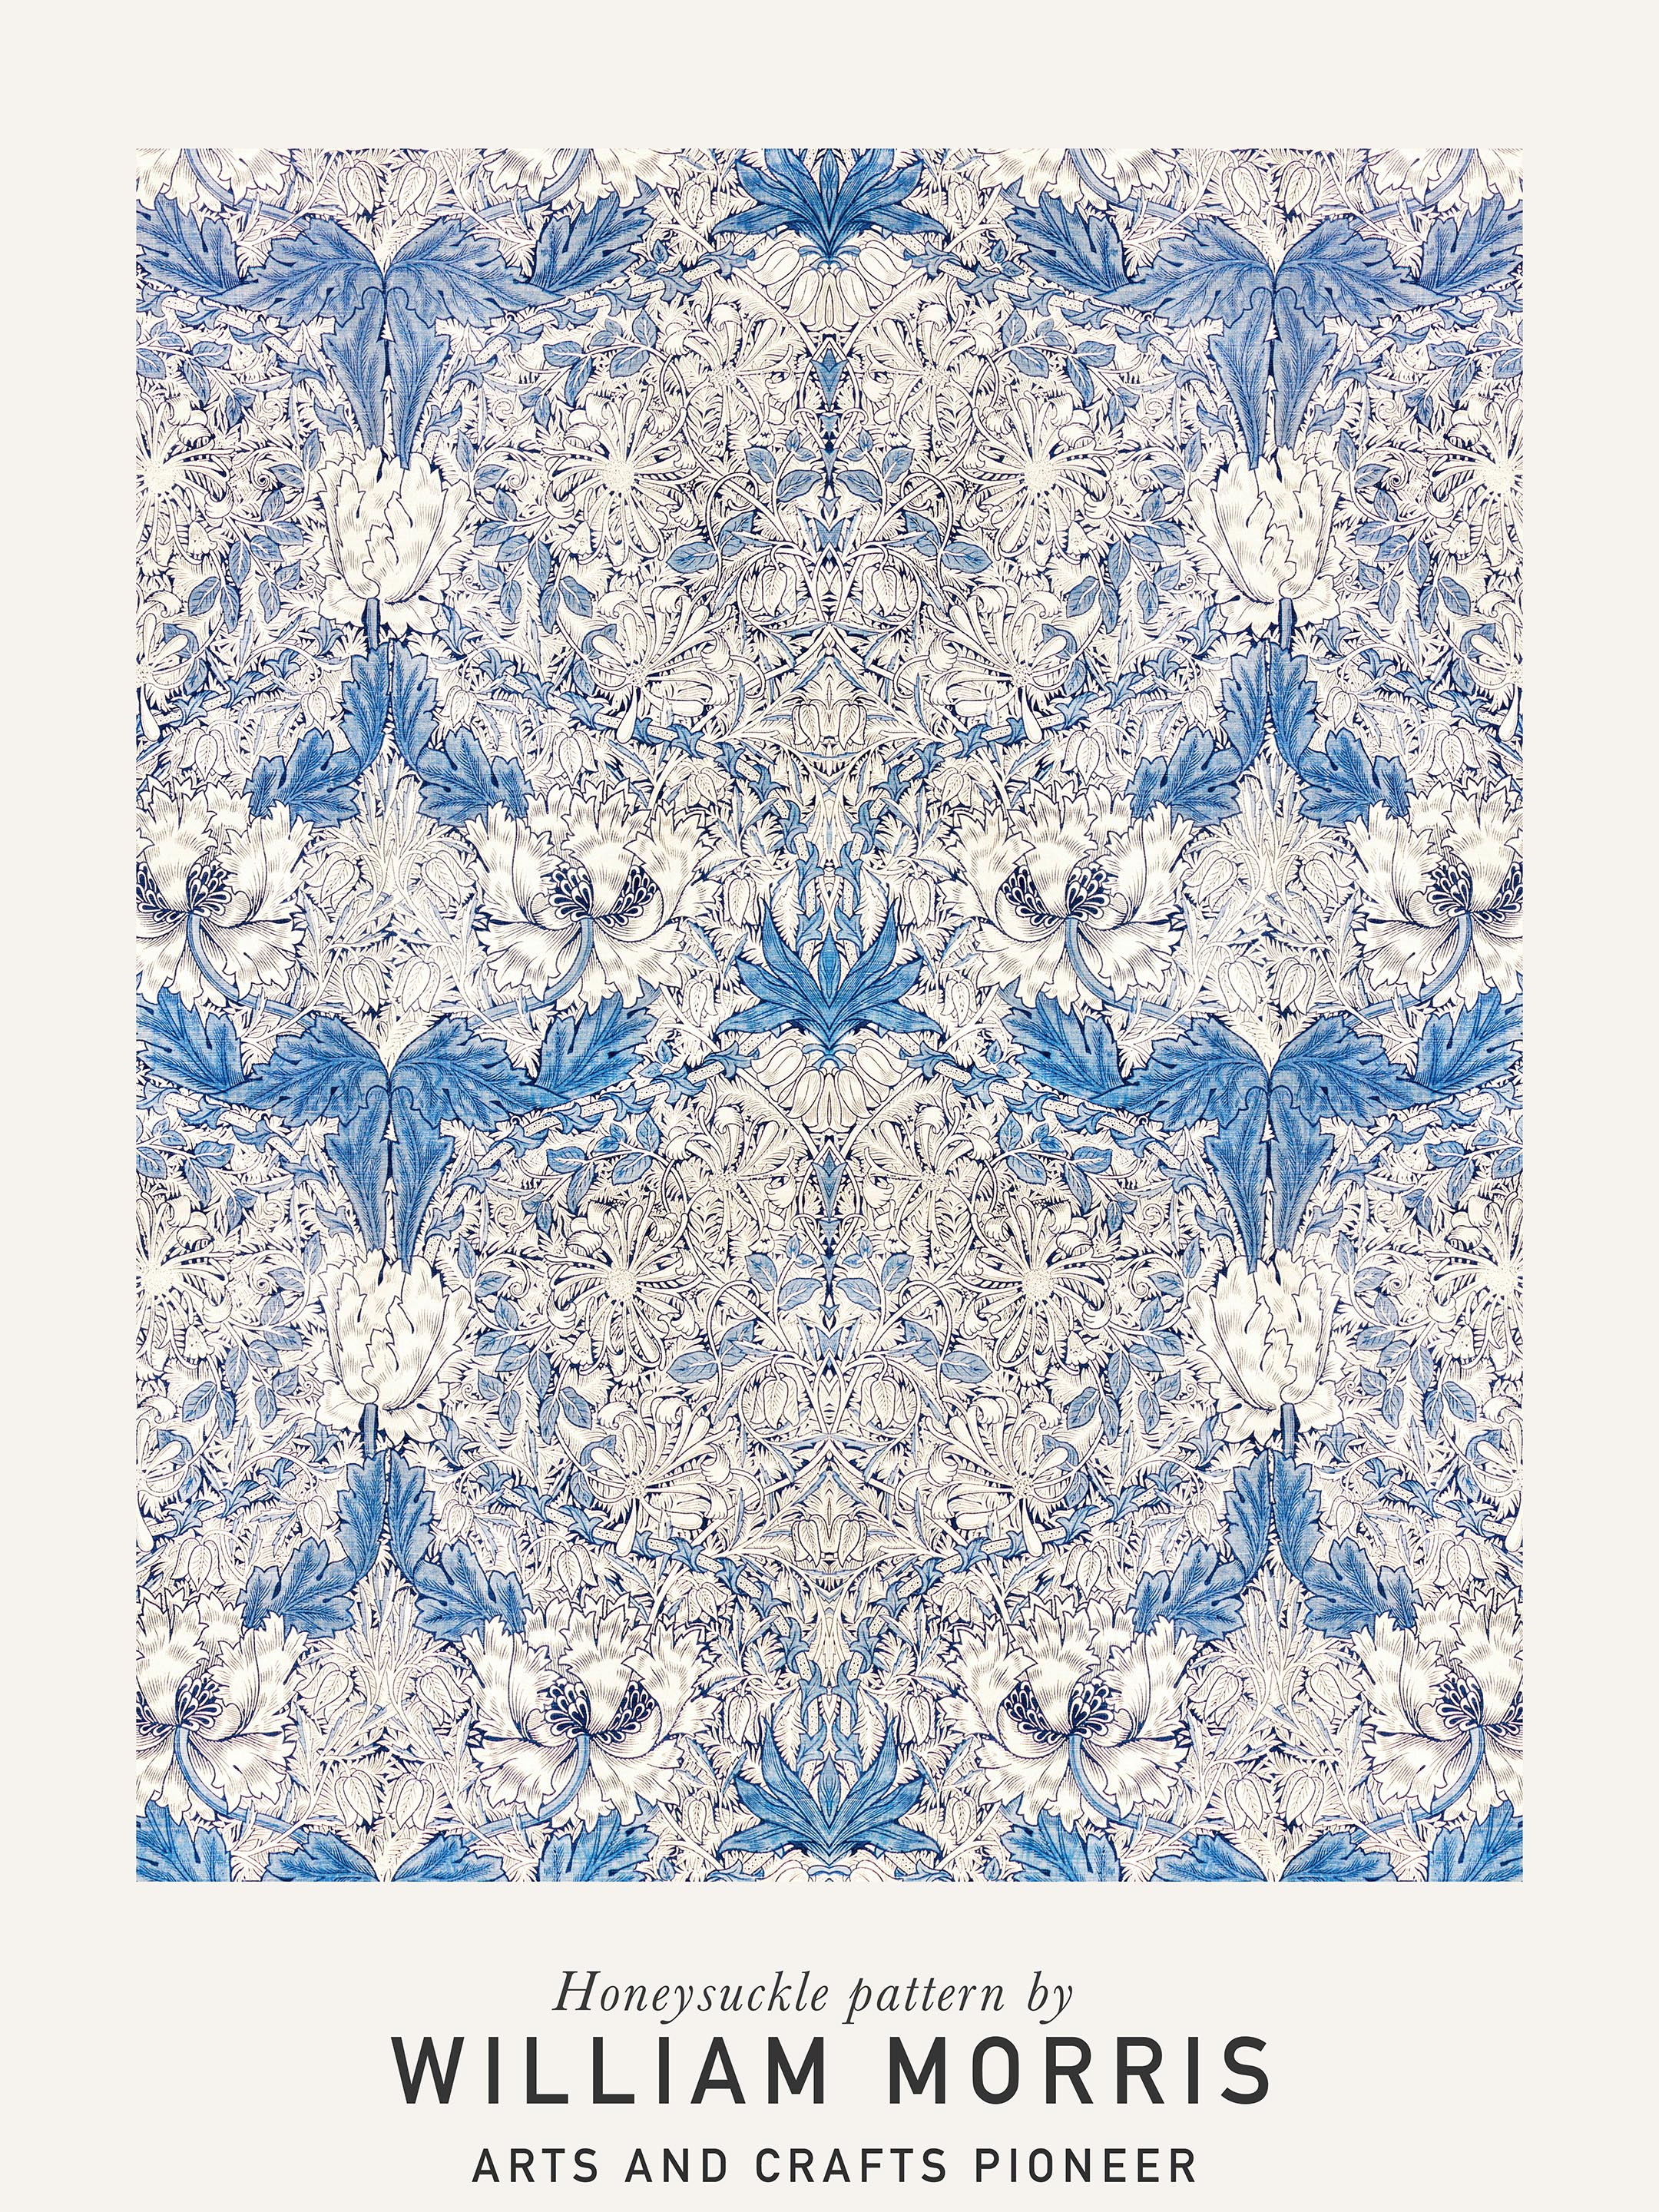 William Morris - Honeysuckle pattern